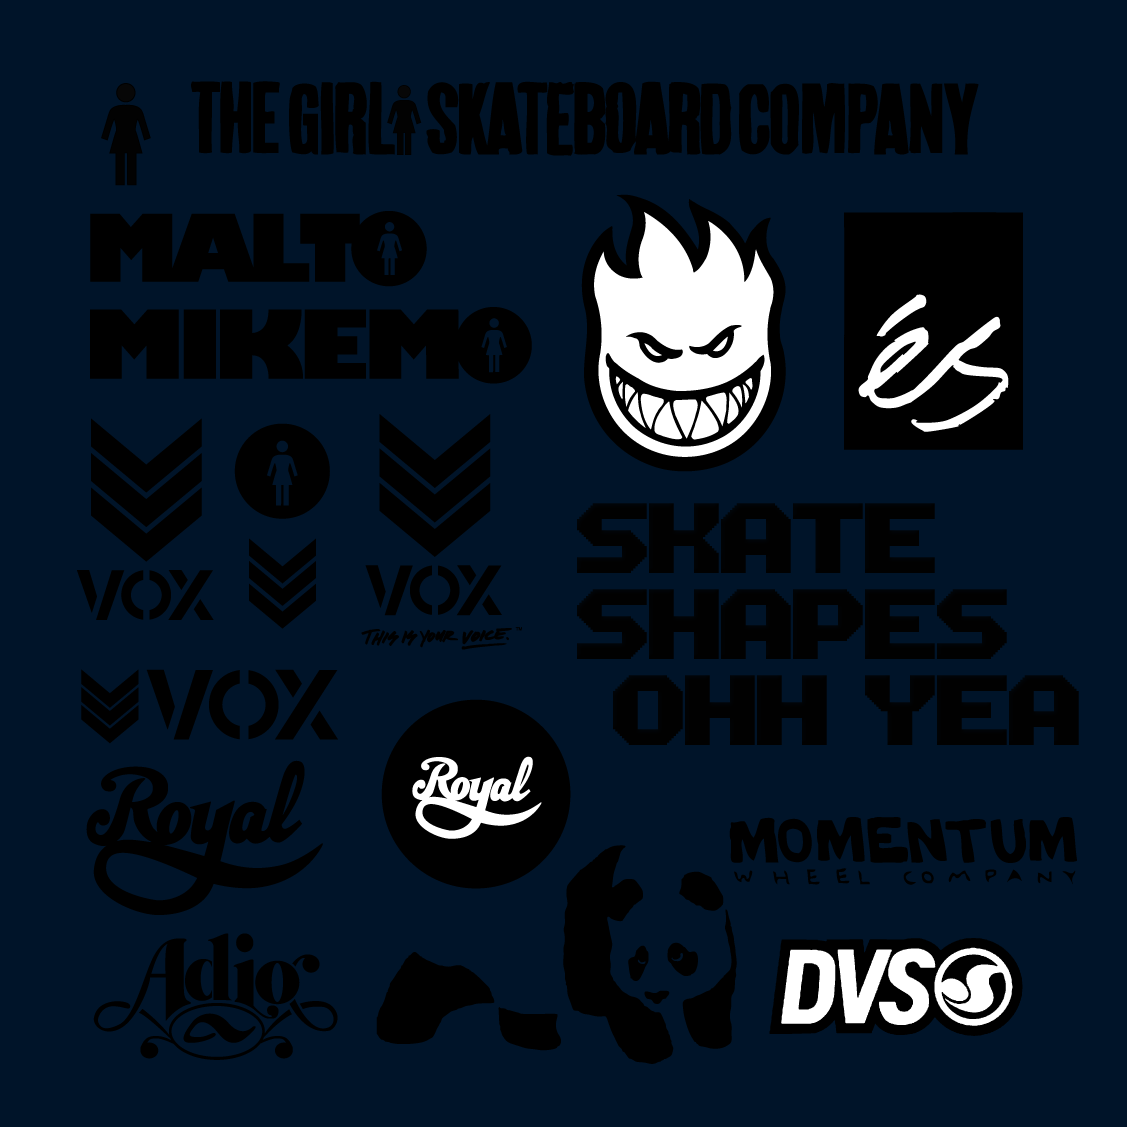 Girl Skateboards Logo Wallpaper My Favorite Skate Logos By